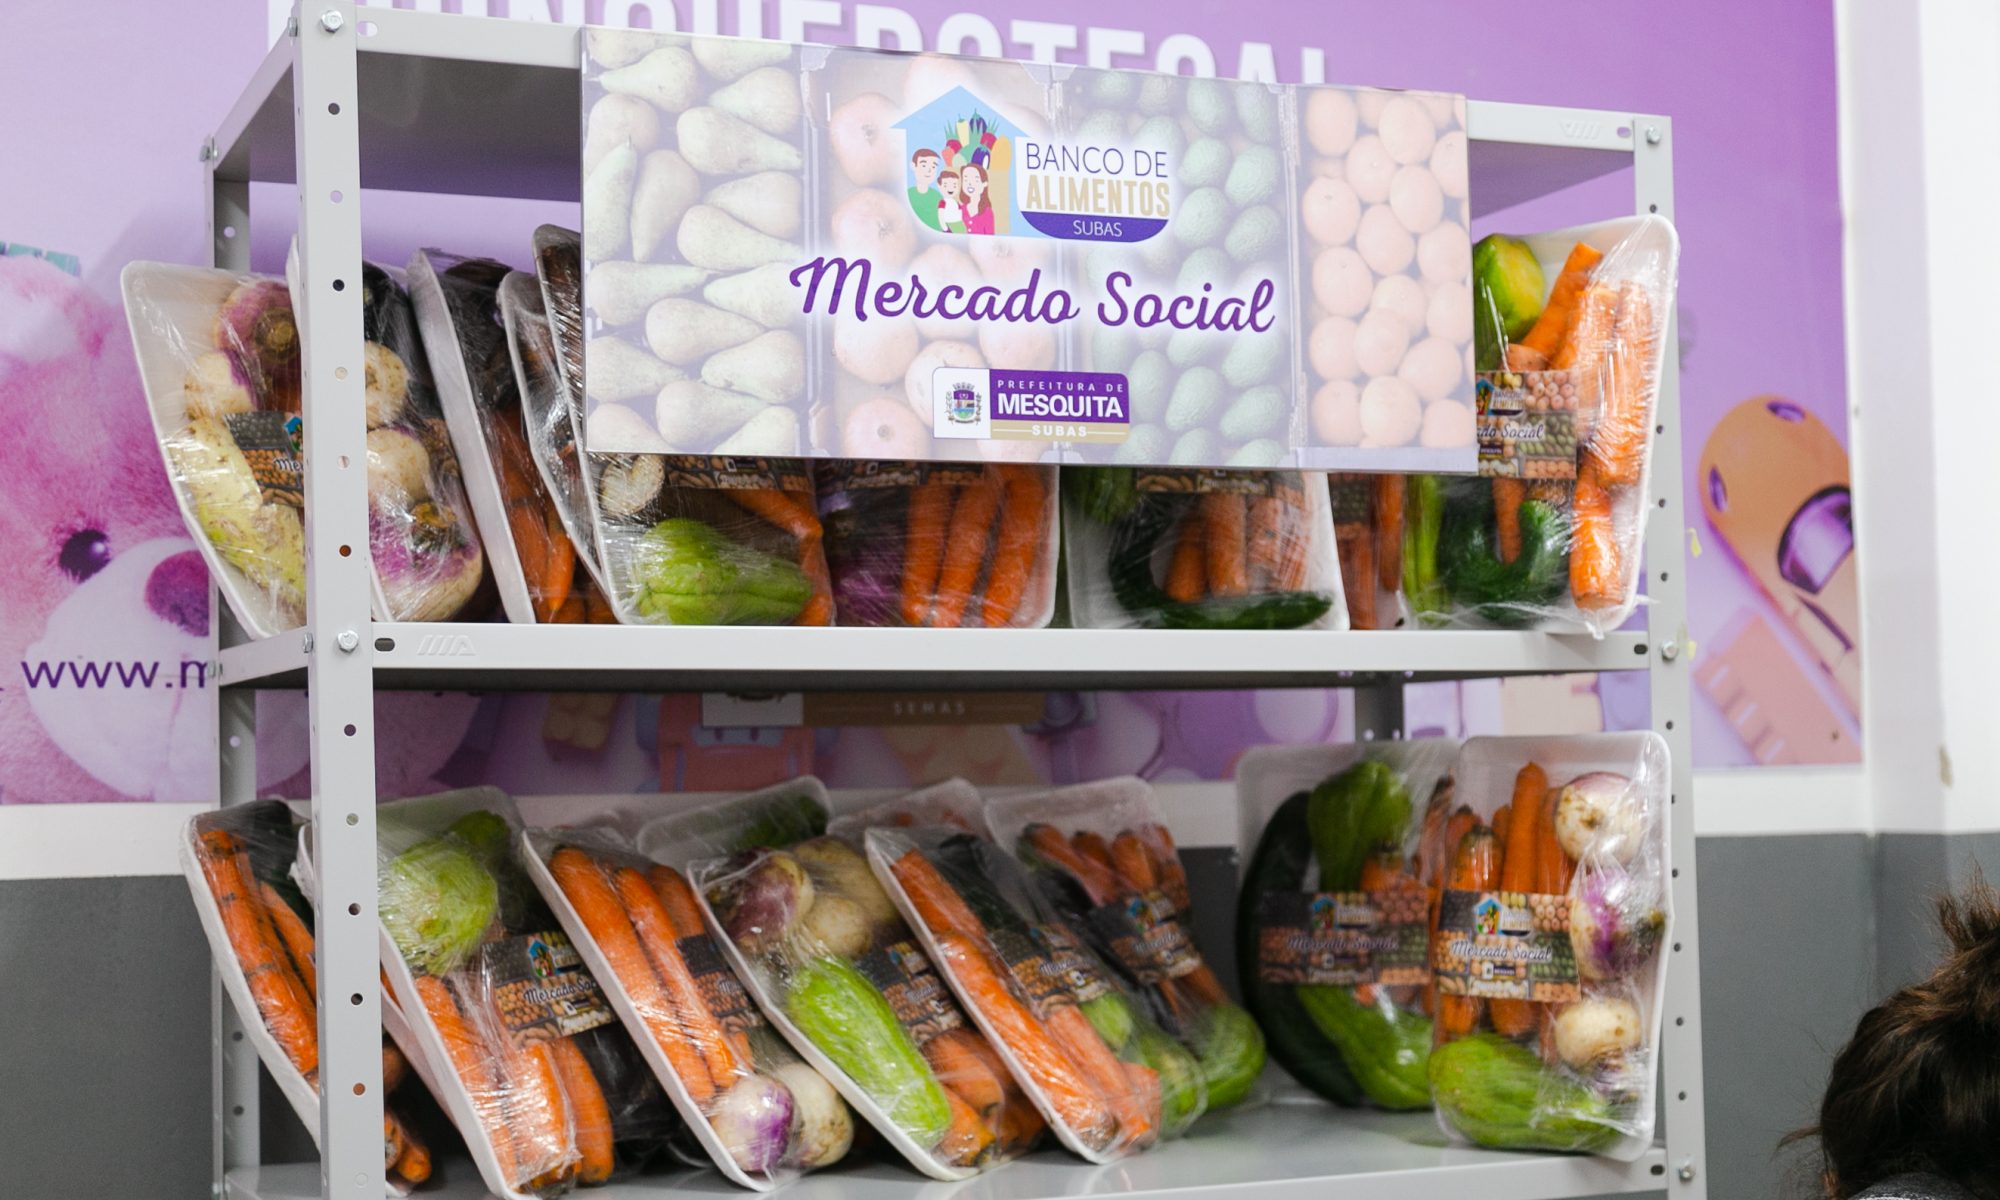 O projeto Mercado Social de Mesquita acontece as sextas-feiras. Nele, bandejas de alimentos podem ser trocadas por produtos recicláveis.